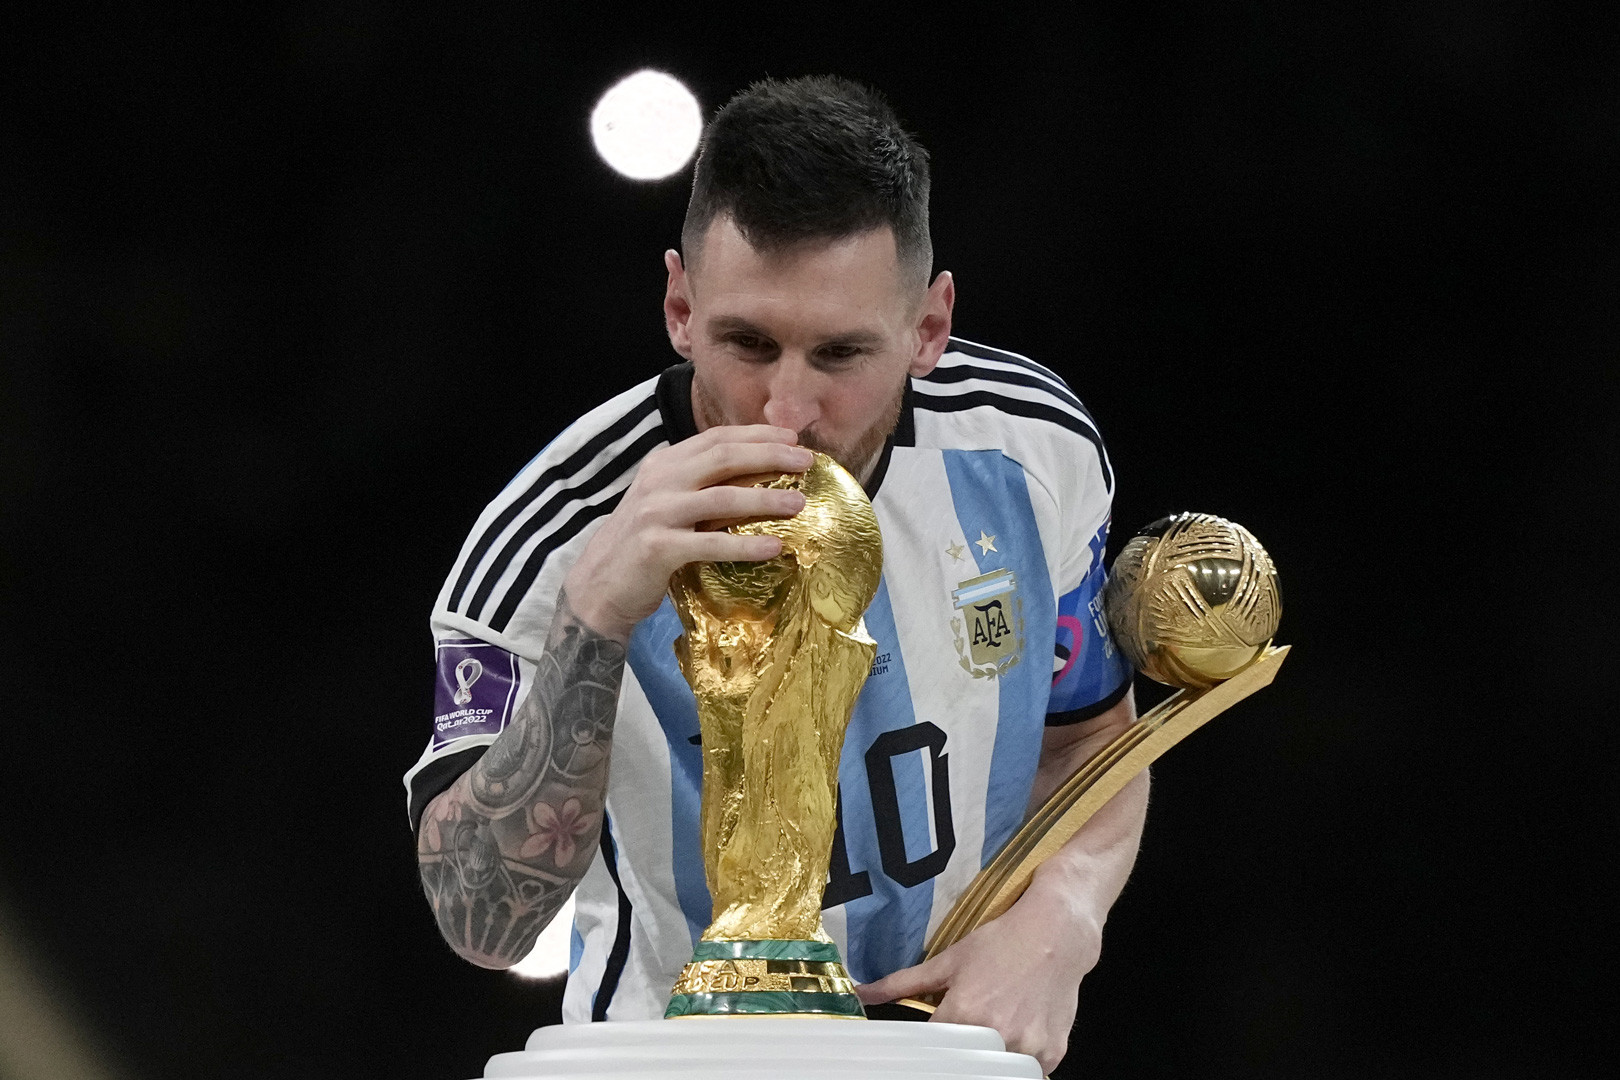 Tại World Cup 2022, Argentina sẽ đặt nhiều hy vọng vào Messi để giành chiến thắng. Hình ảnh liên quan chắc chắn sẽ khiến người hâm mộ háo hức muốn xem thêm những pha bóng đá tuyệt vời của đội tuyển Argentina do Messi dẫn dắt.